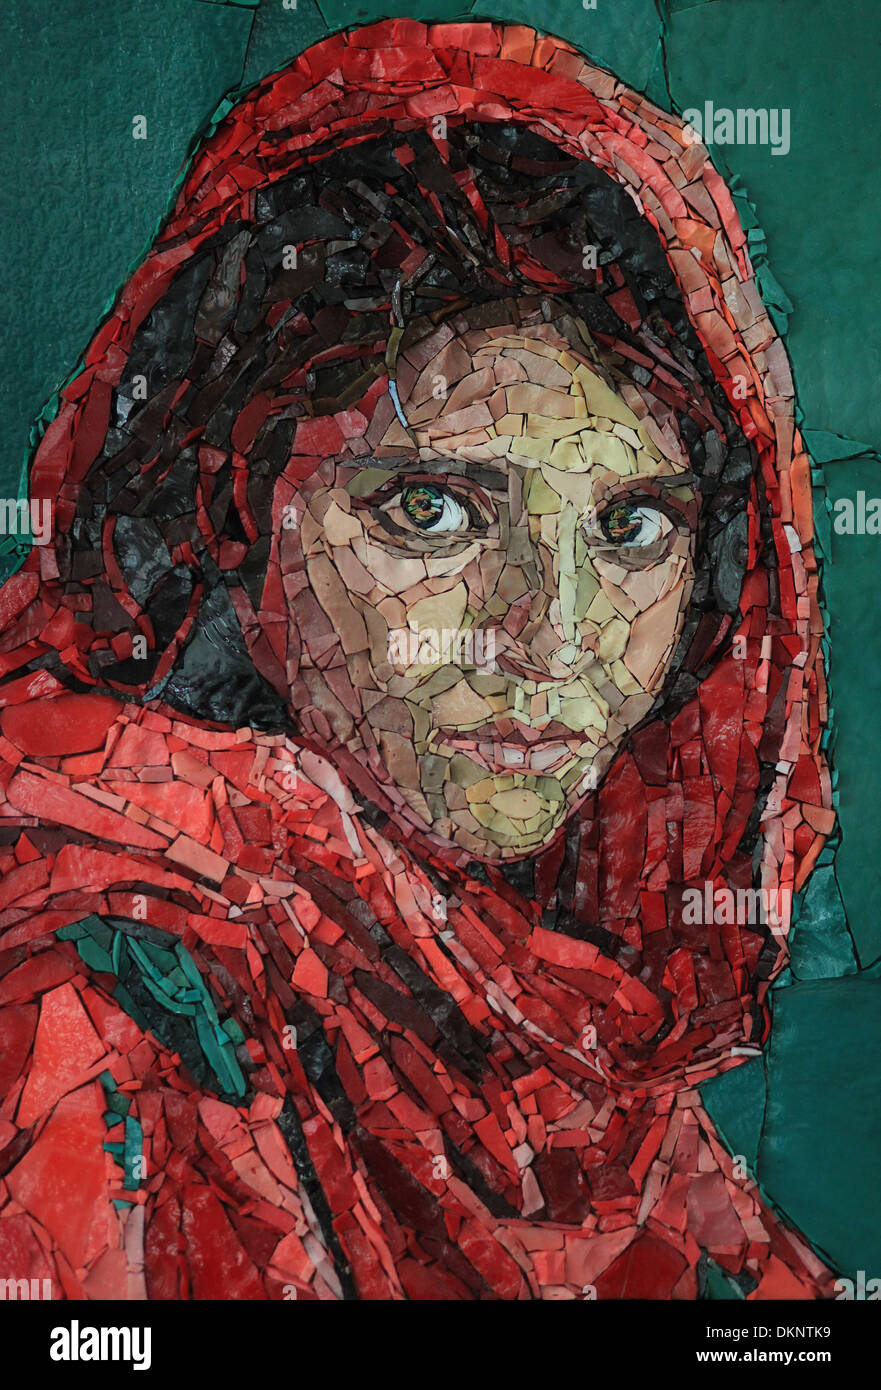 Sharbat Gula de portrait, aussi connu sous le nom de "fille afghane'. Copie de la célèbre photographie de Steve McCurry, tourné en décembre 1984. Mosaïque. Banque D'Images